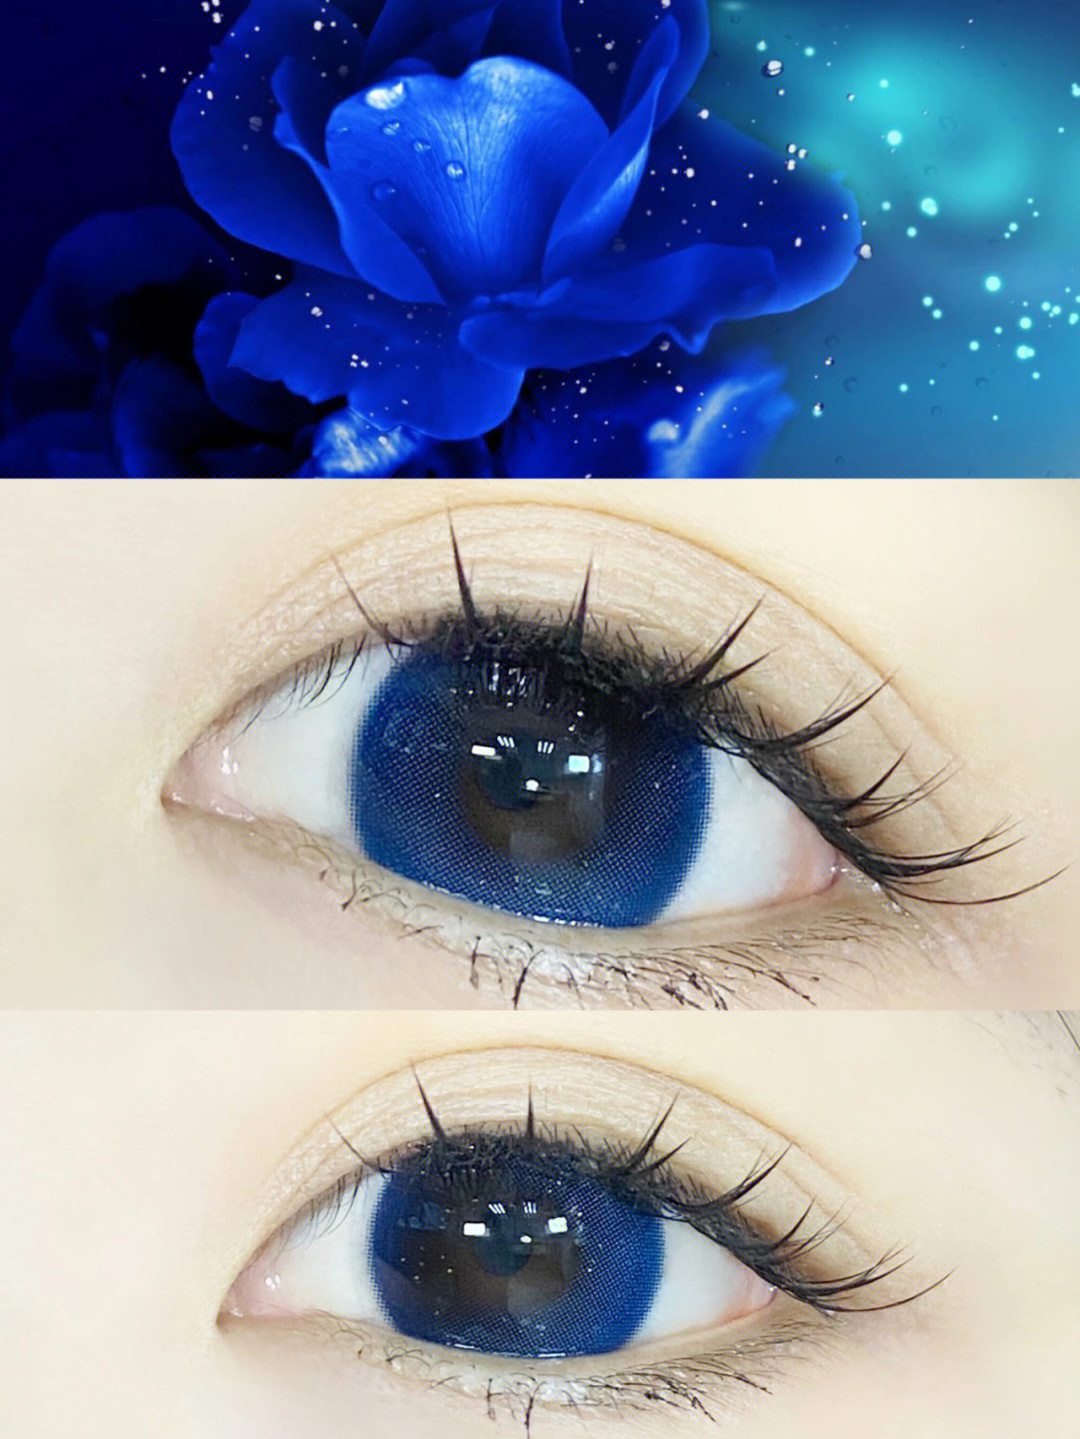 蓝色妖姬色的眼睛像极了北极夜点缀夜空的星99干净且不惹世俗尘埃